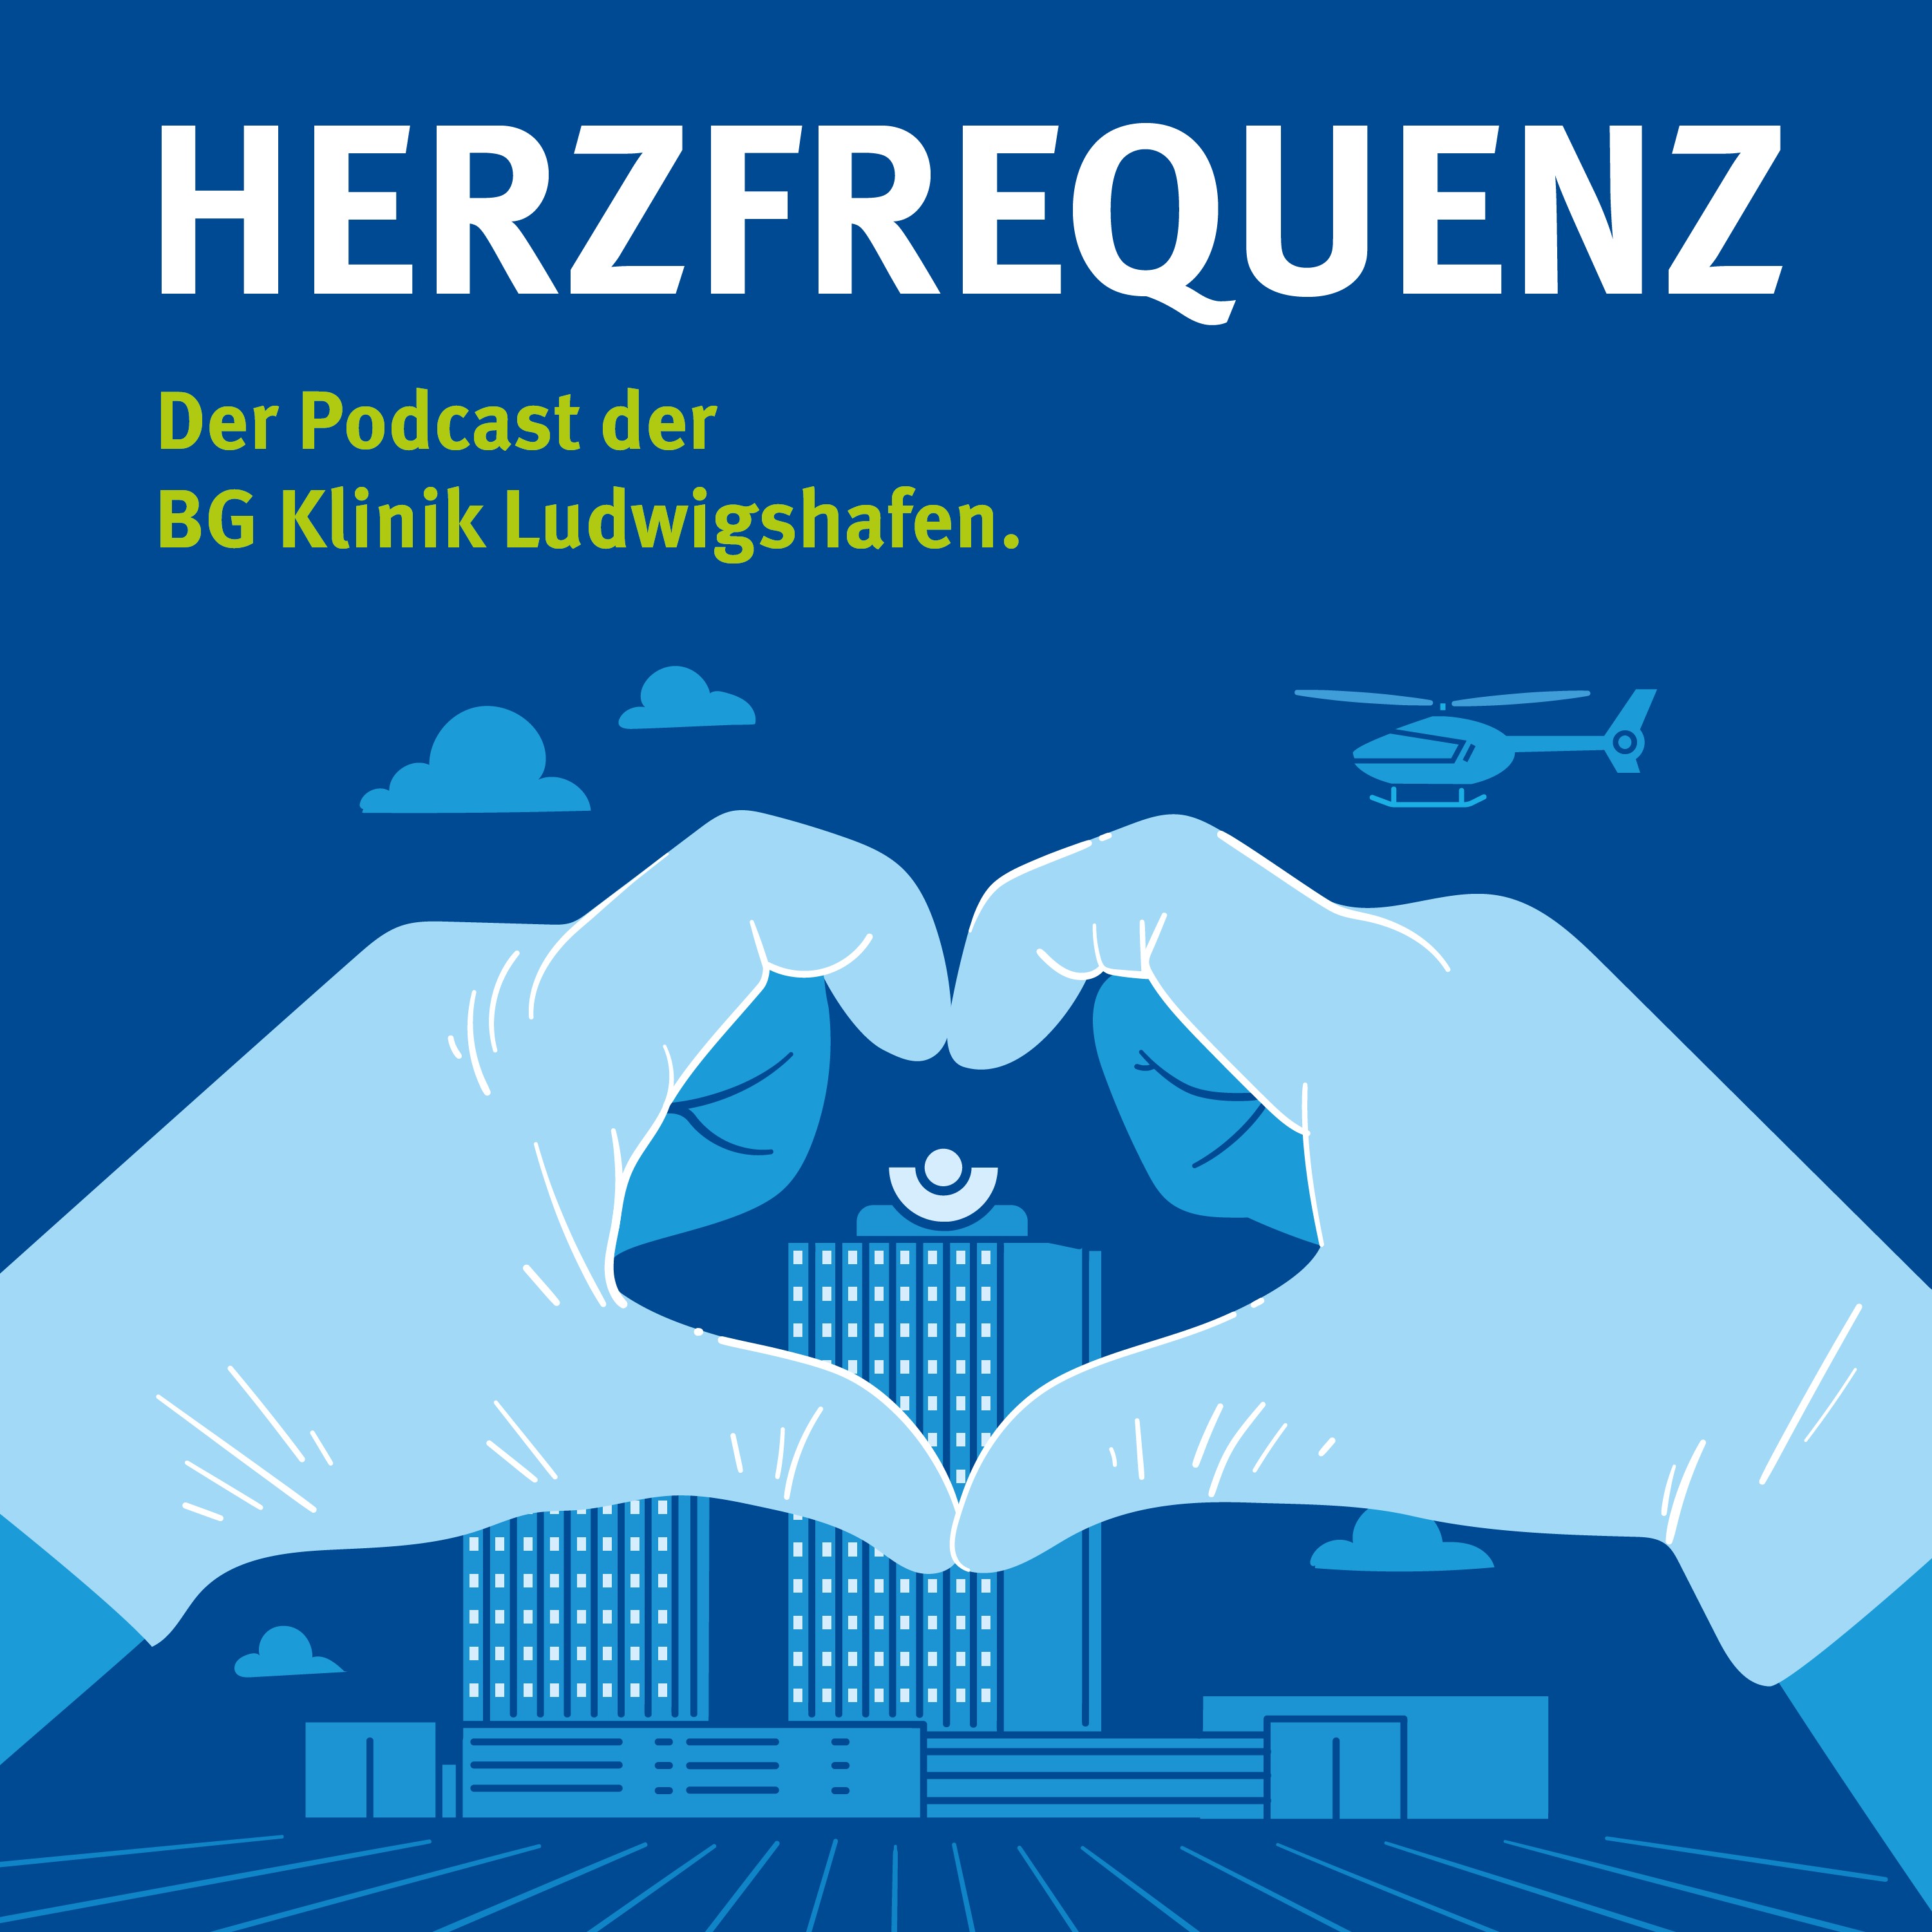 Herzfrequenz Podcast der BG Klinik Ludwigshafen